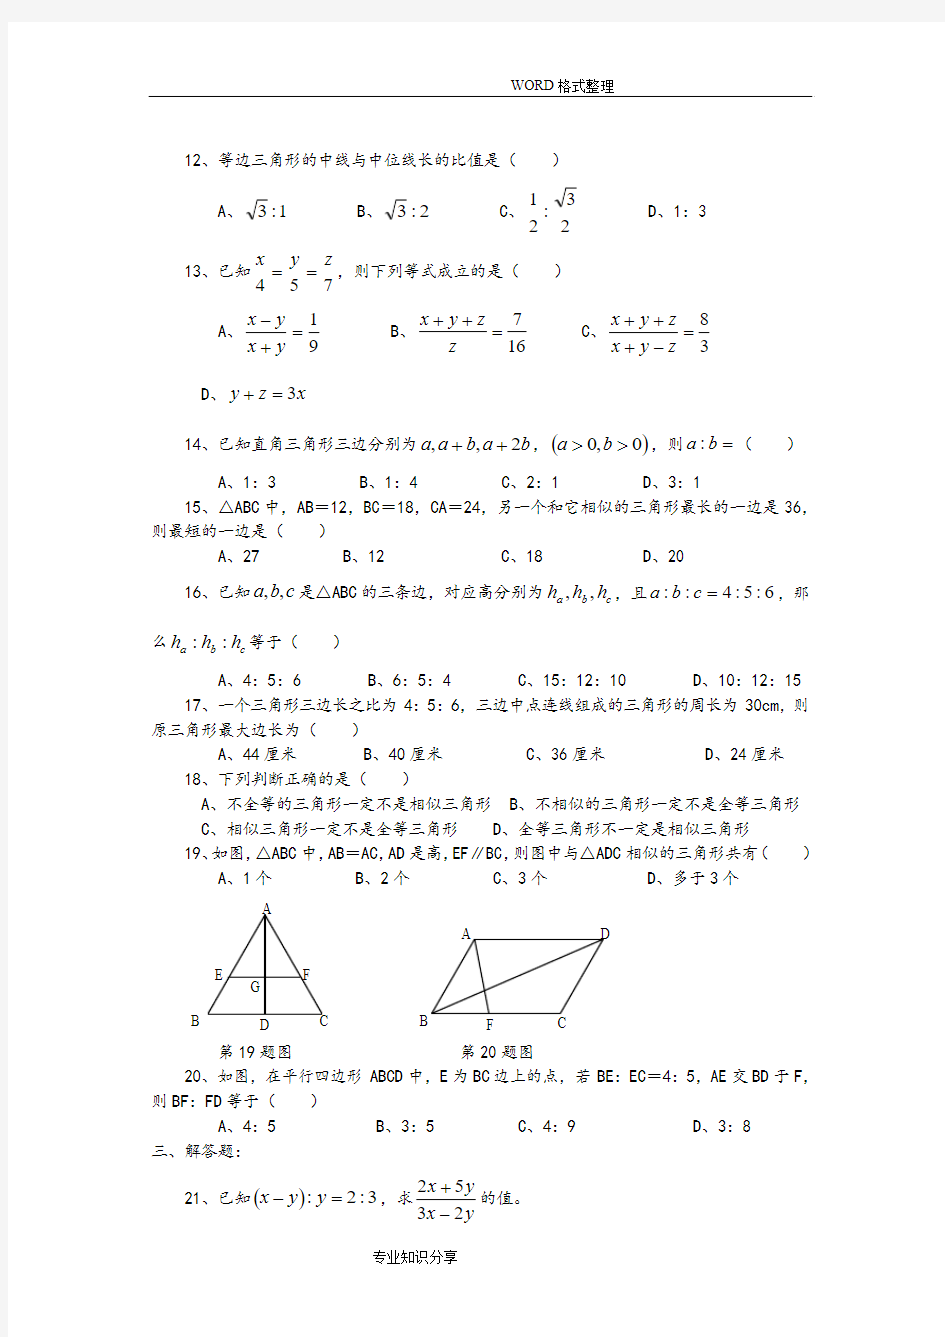 相似三角形练习试题和答案解析